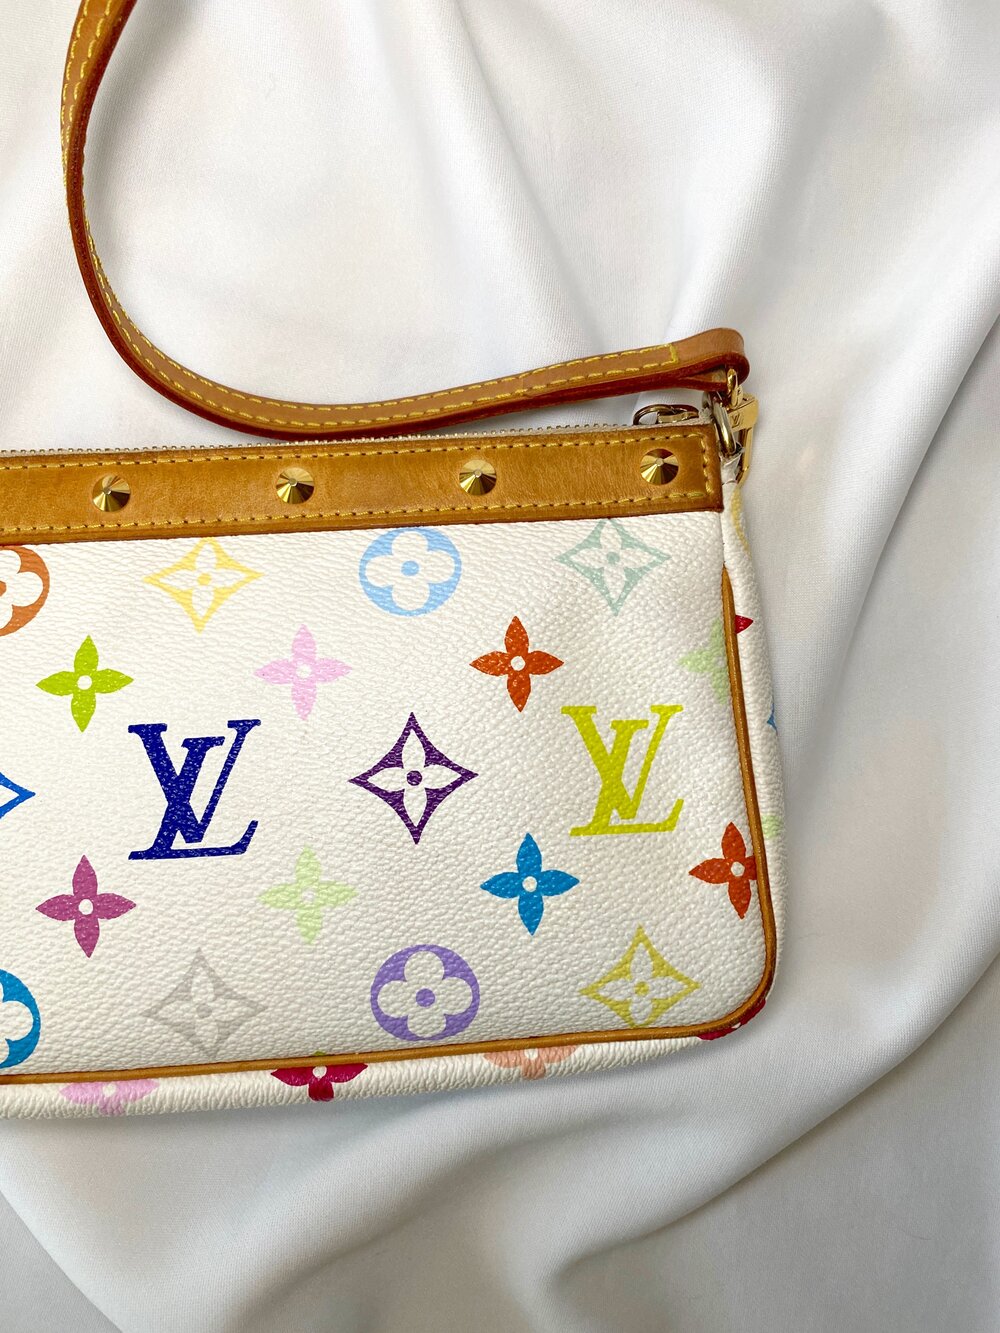 Pin by Ale Espinoza on Louis Vuitton  Louis vuitton, Vuitton handbags,  Ornaments